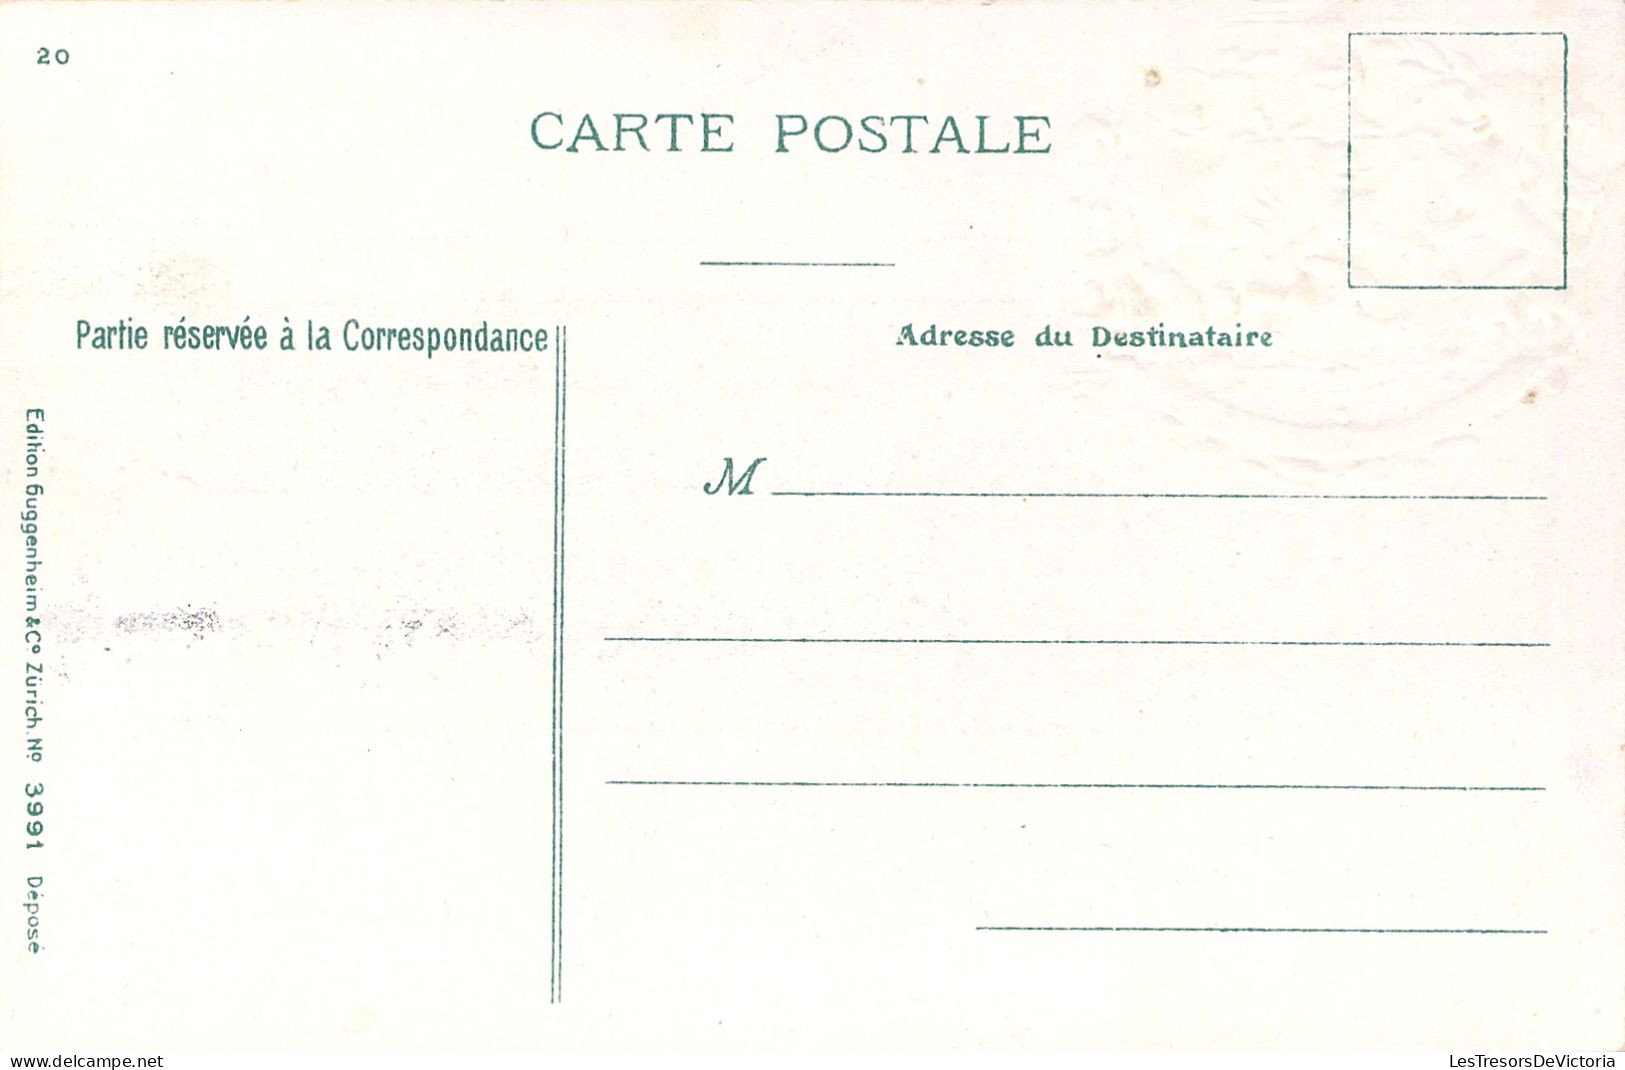 BELGIQUE - Gare De Corbon : Inauguration Du Chemin De Fer De Sedan à Bouillon - Timbres - Carte Postale Ancienne - Postzegels (afbeeldingen)